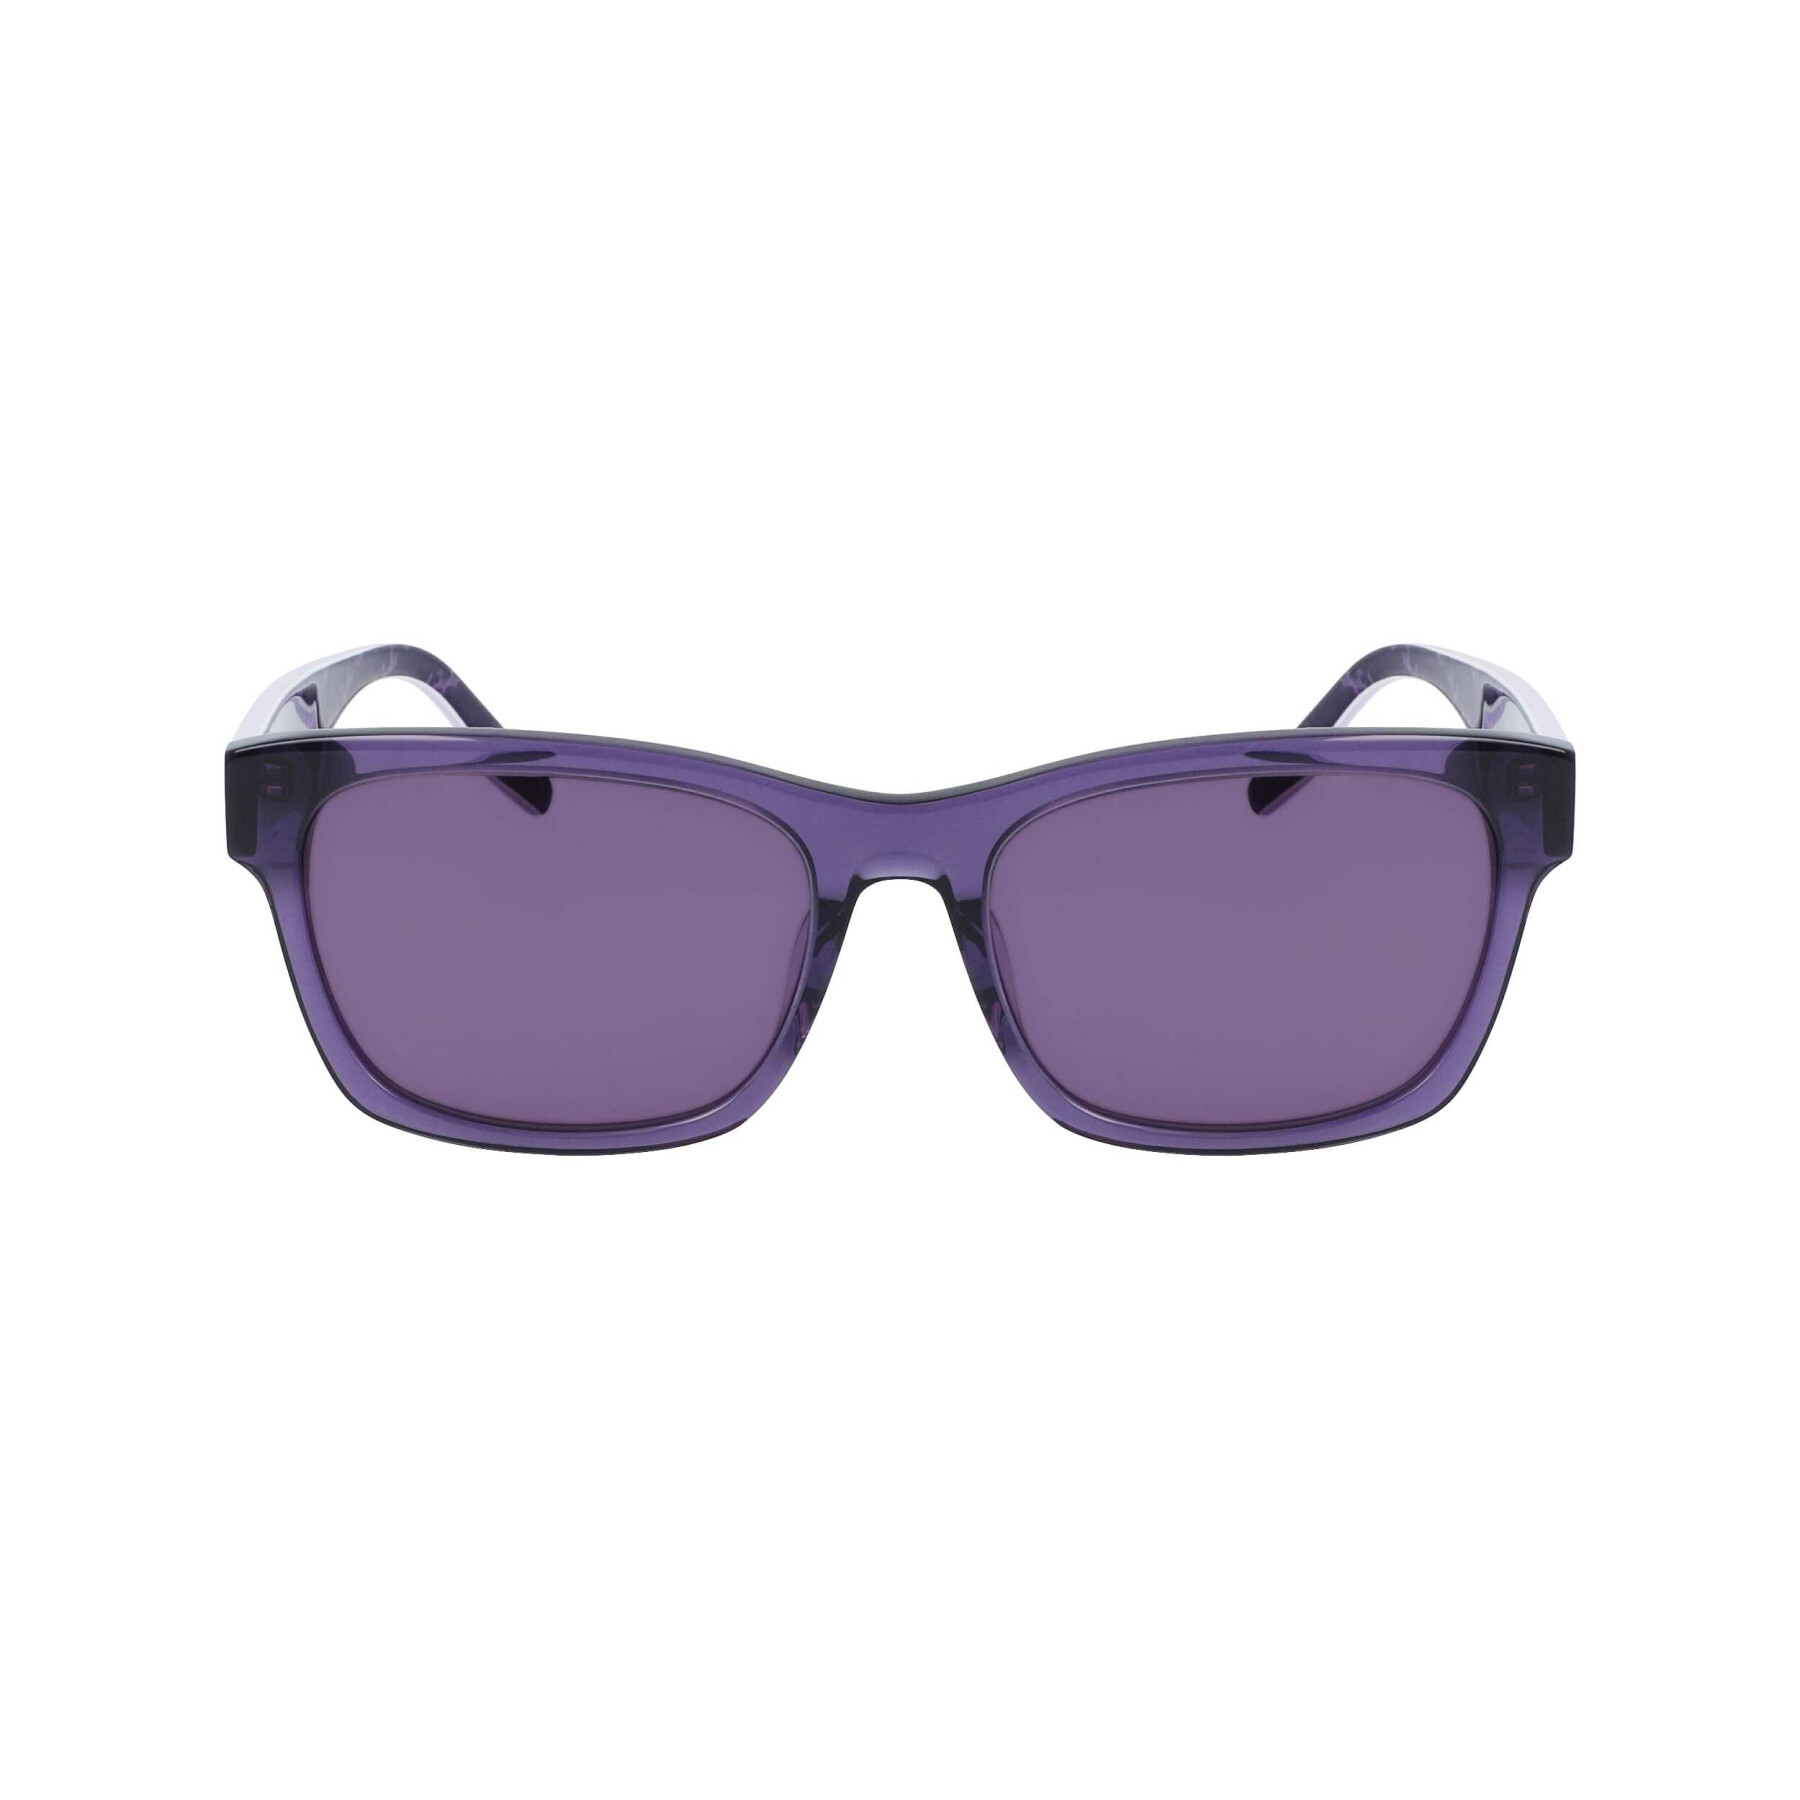 Women's sunglasses Converse CV501SLLSTAR5